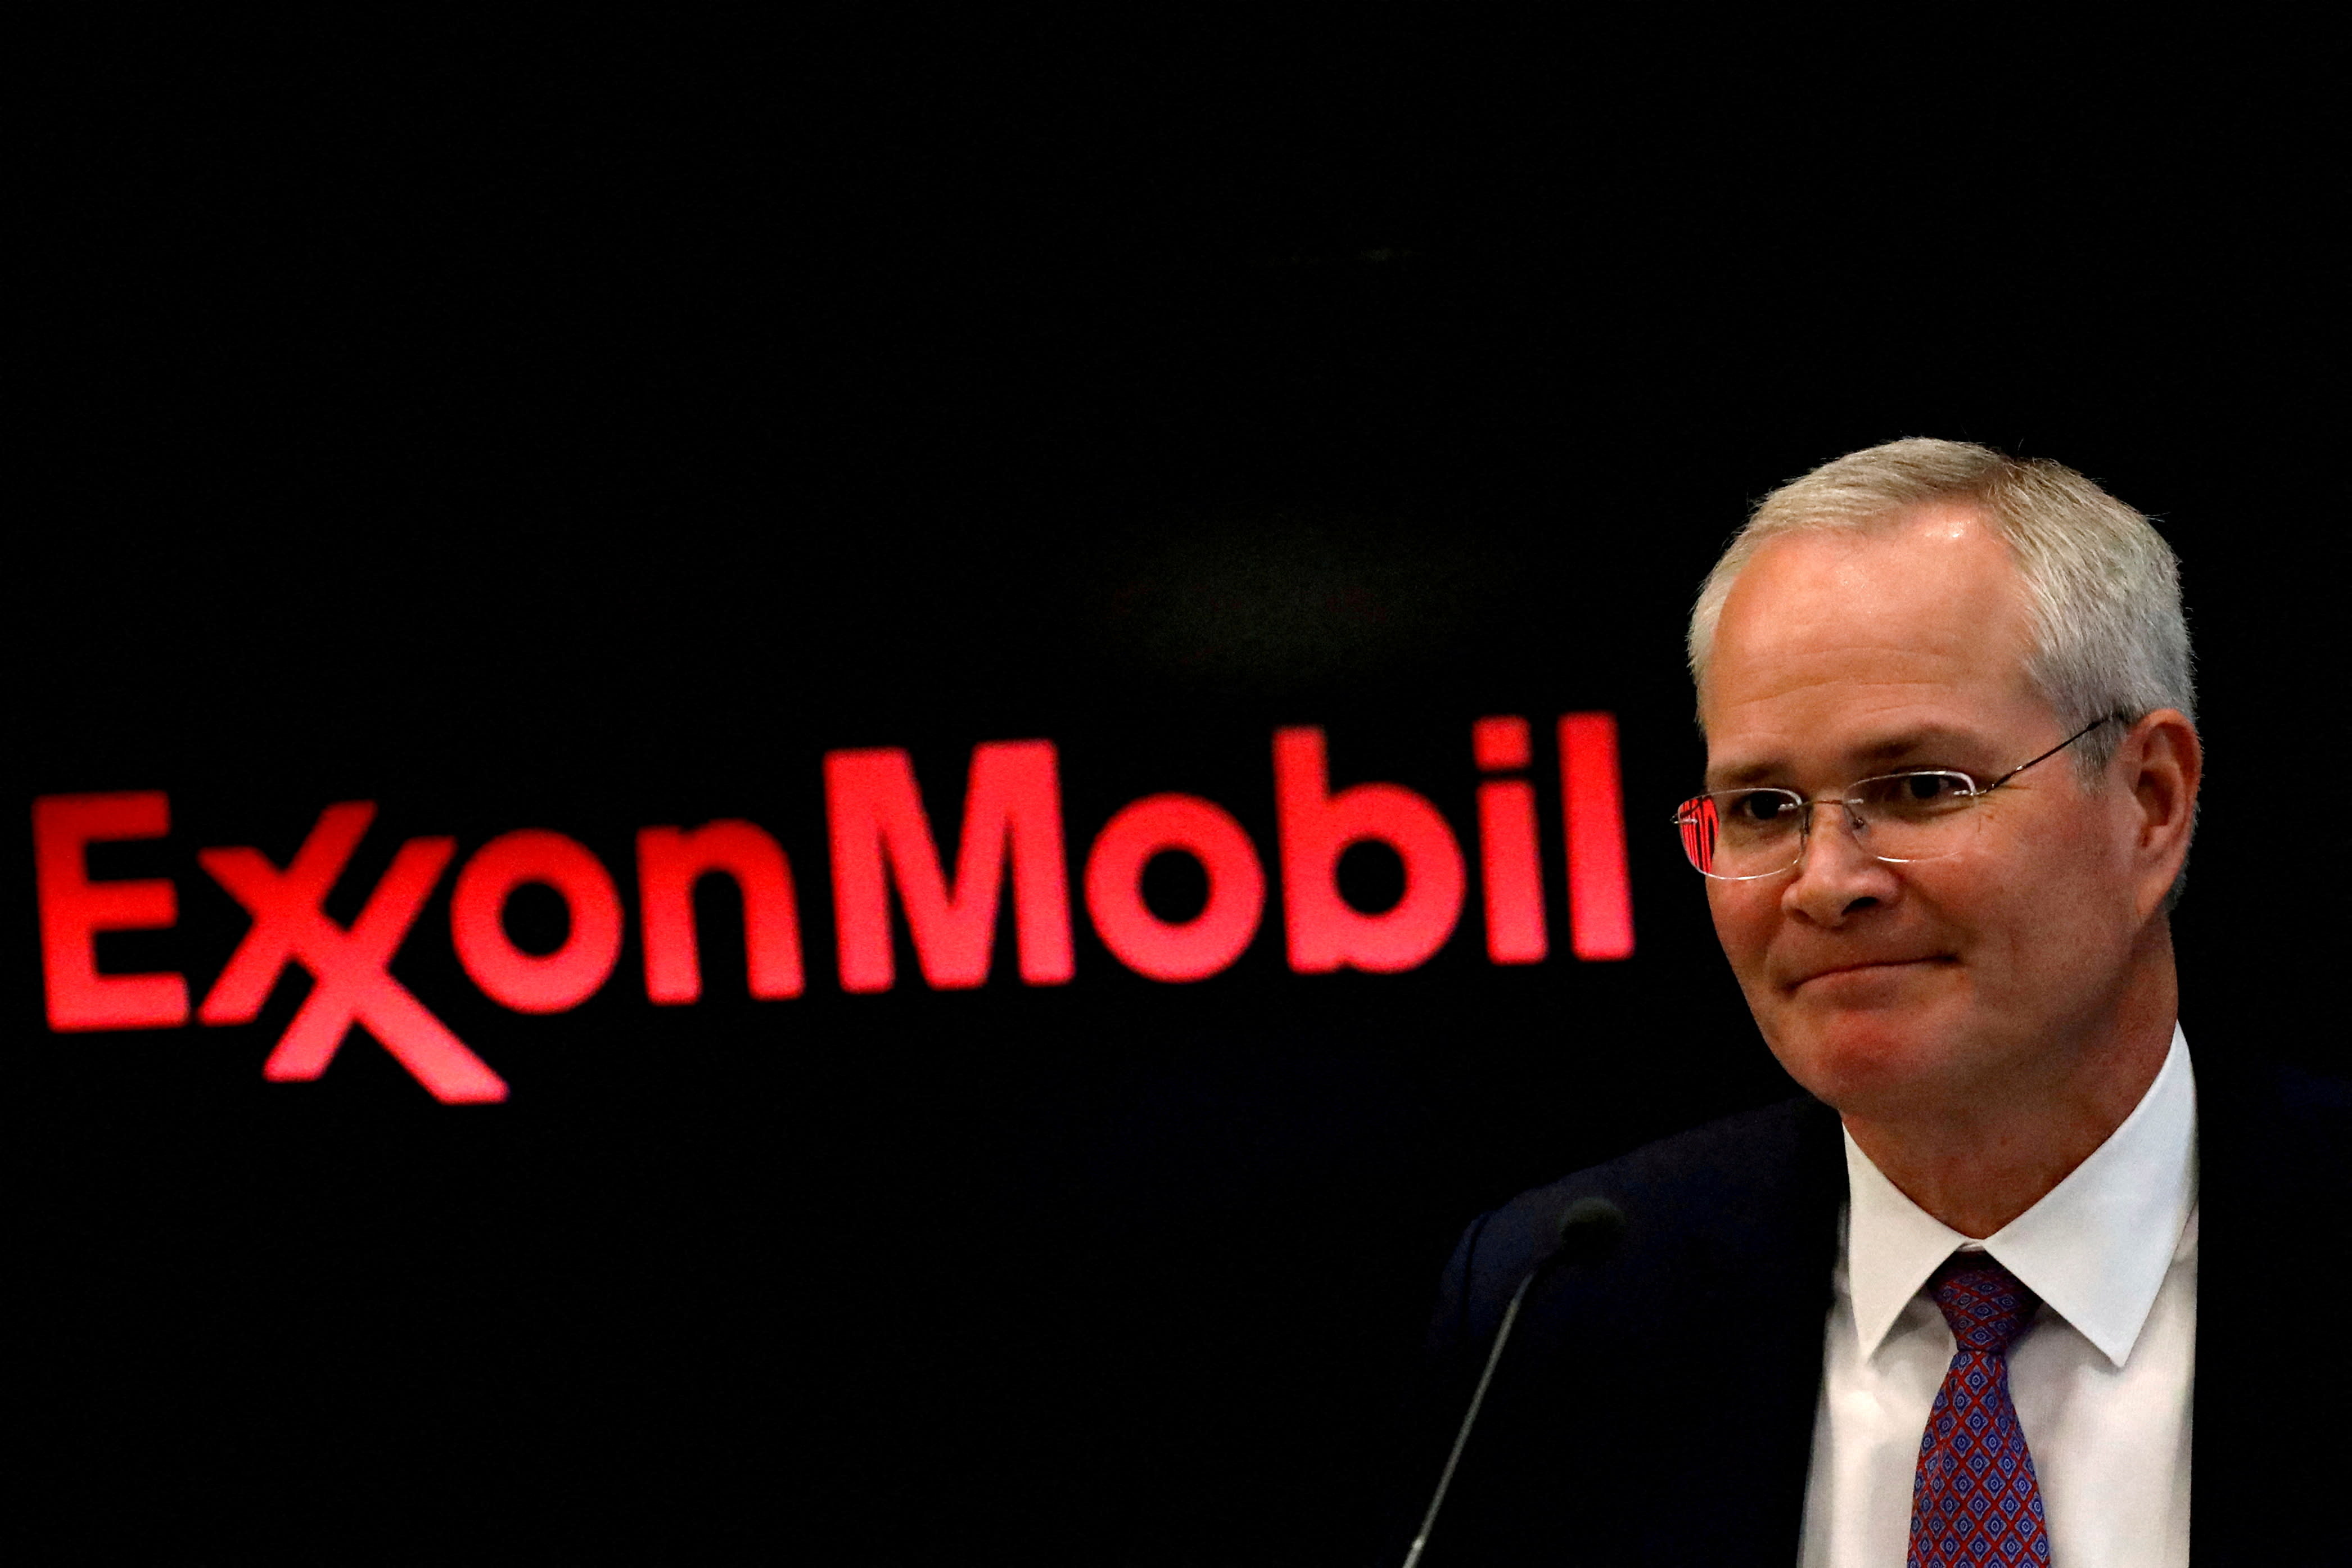 Exxon spodziewa się znacznego wzrostu zysków w wyniku cięć kosztów i zwiększy wykup akcji po sfinalizowaniu transakcji z Pioneerem